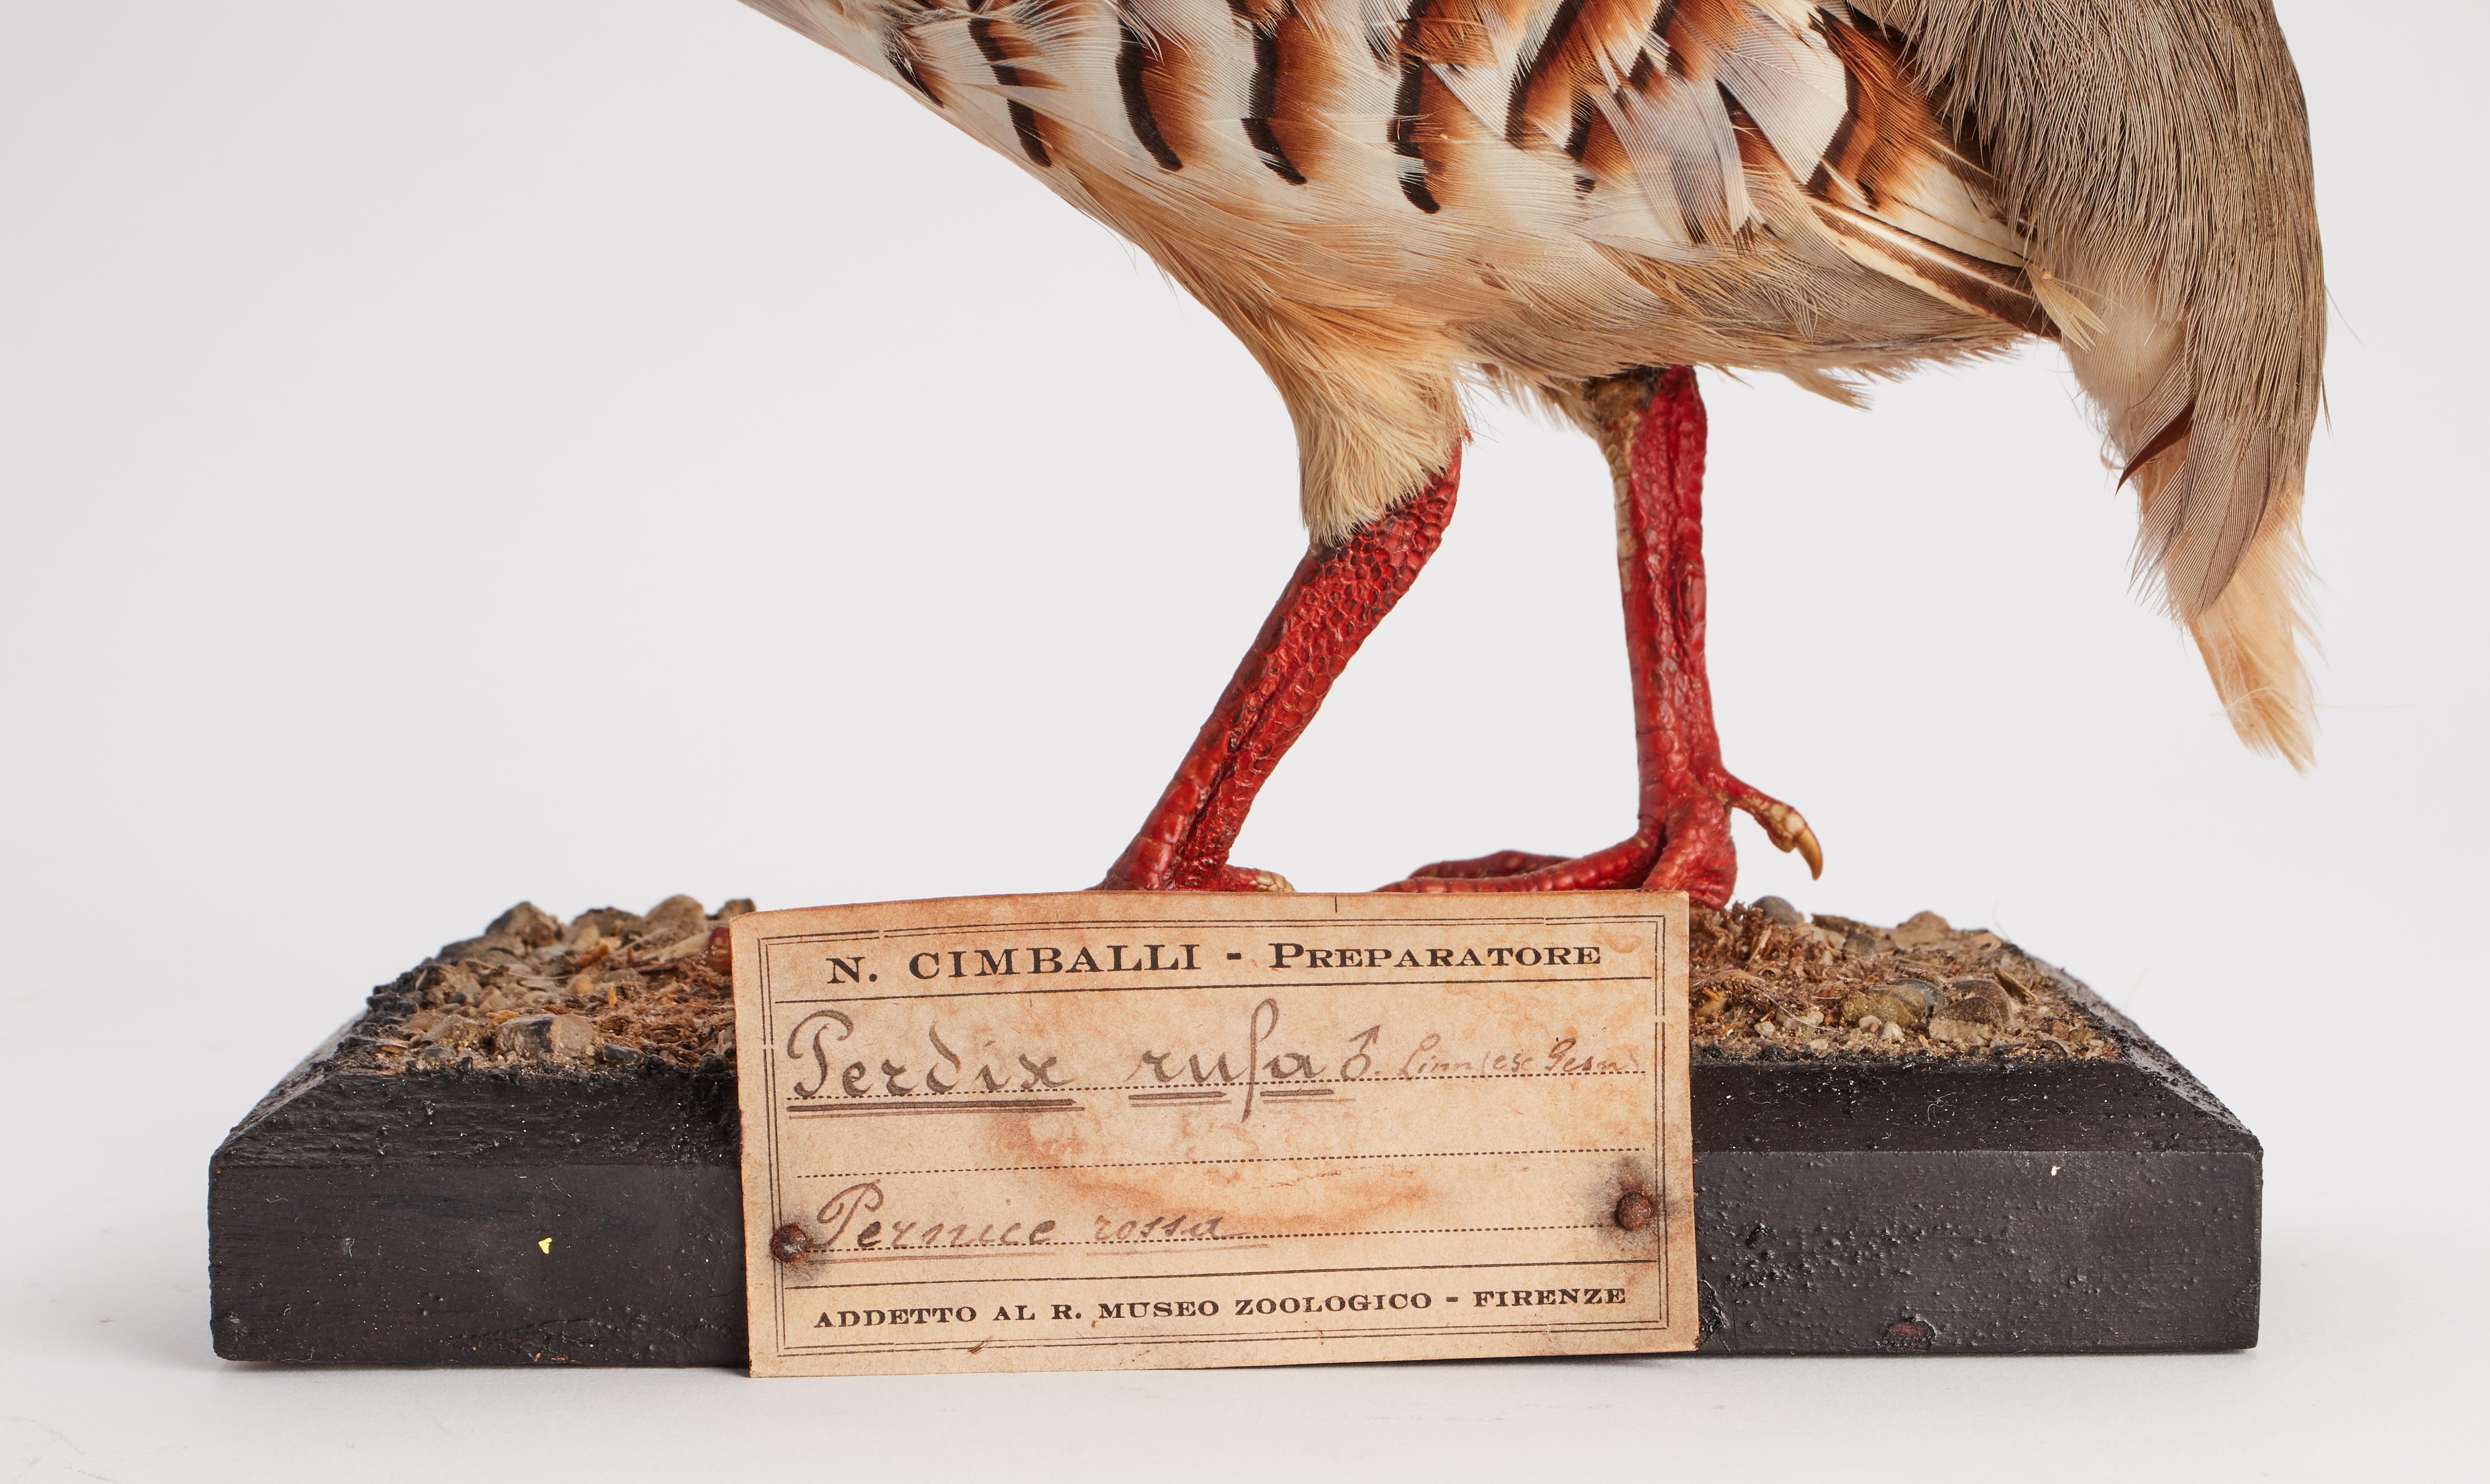 Naturpräparat aus der Wunderkammer Ausgestopfter Vogel (Perdix Rufa) Rotes Rebhuhn montiert auf einem Holzsockel mit Kartusche Präparat für Labor und Naturalienschrank. S. Brogi Naturalista. Siena, Italien 1880 ca.